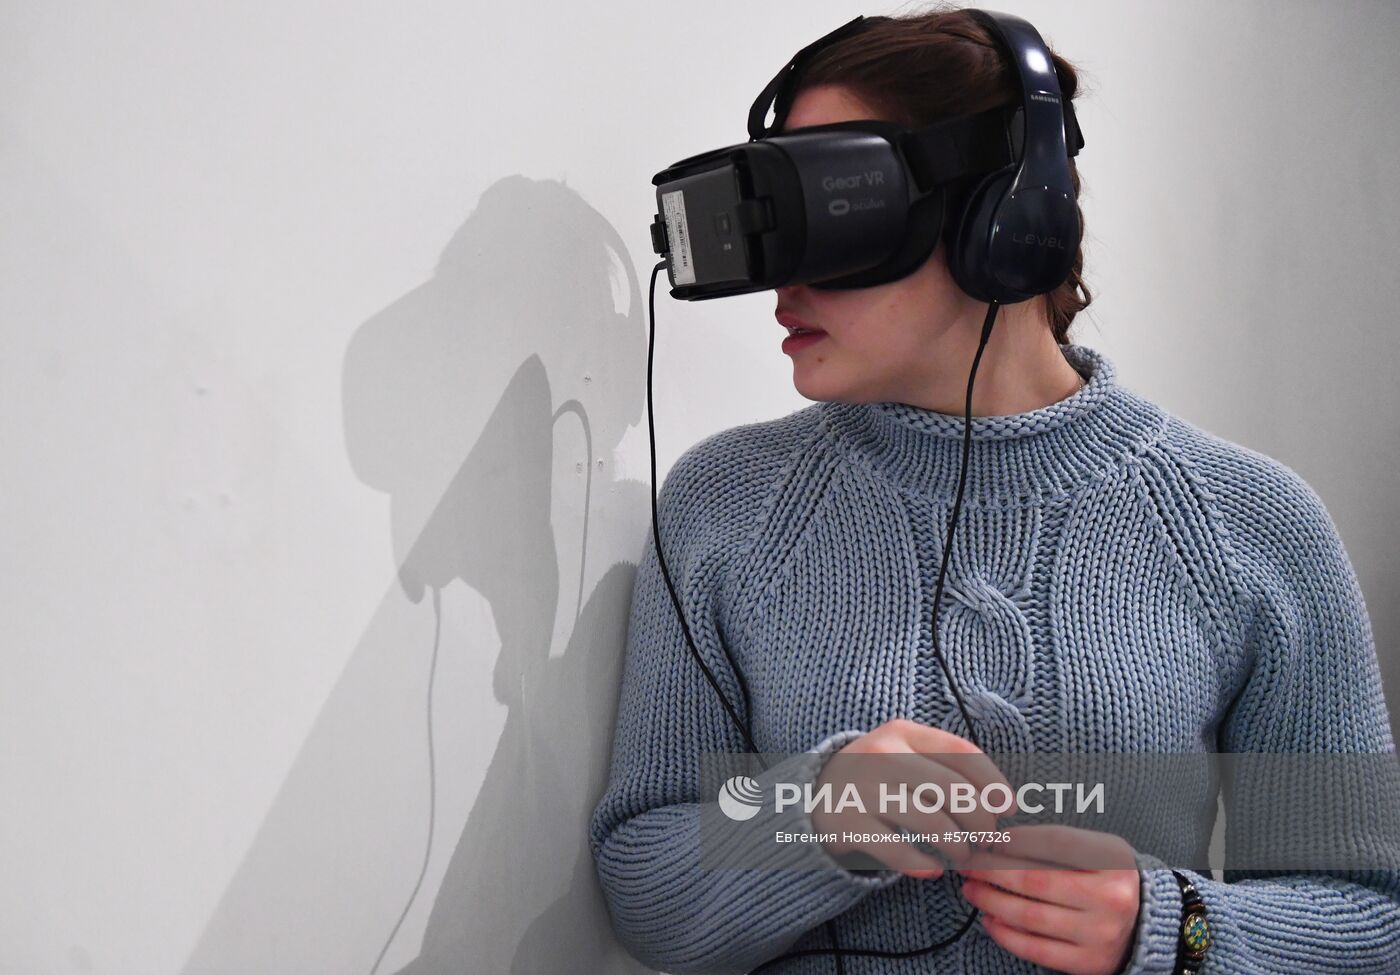 VR-перформанс "Слепые в большом городе"